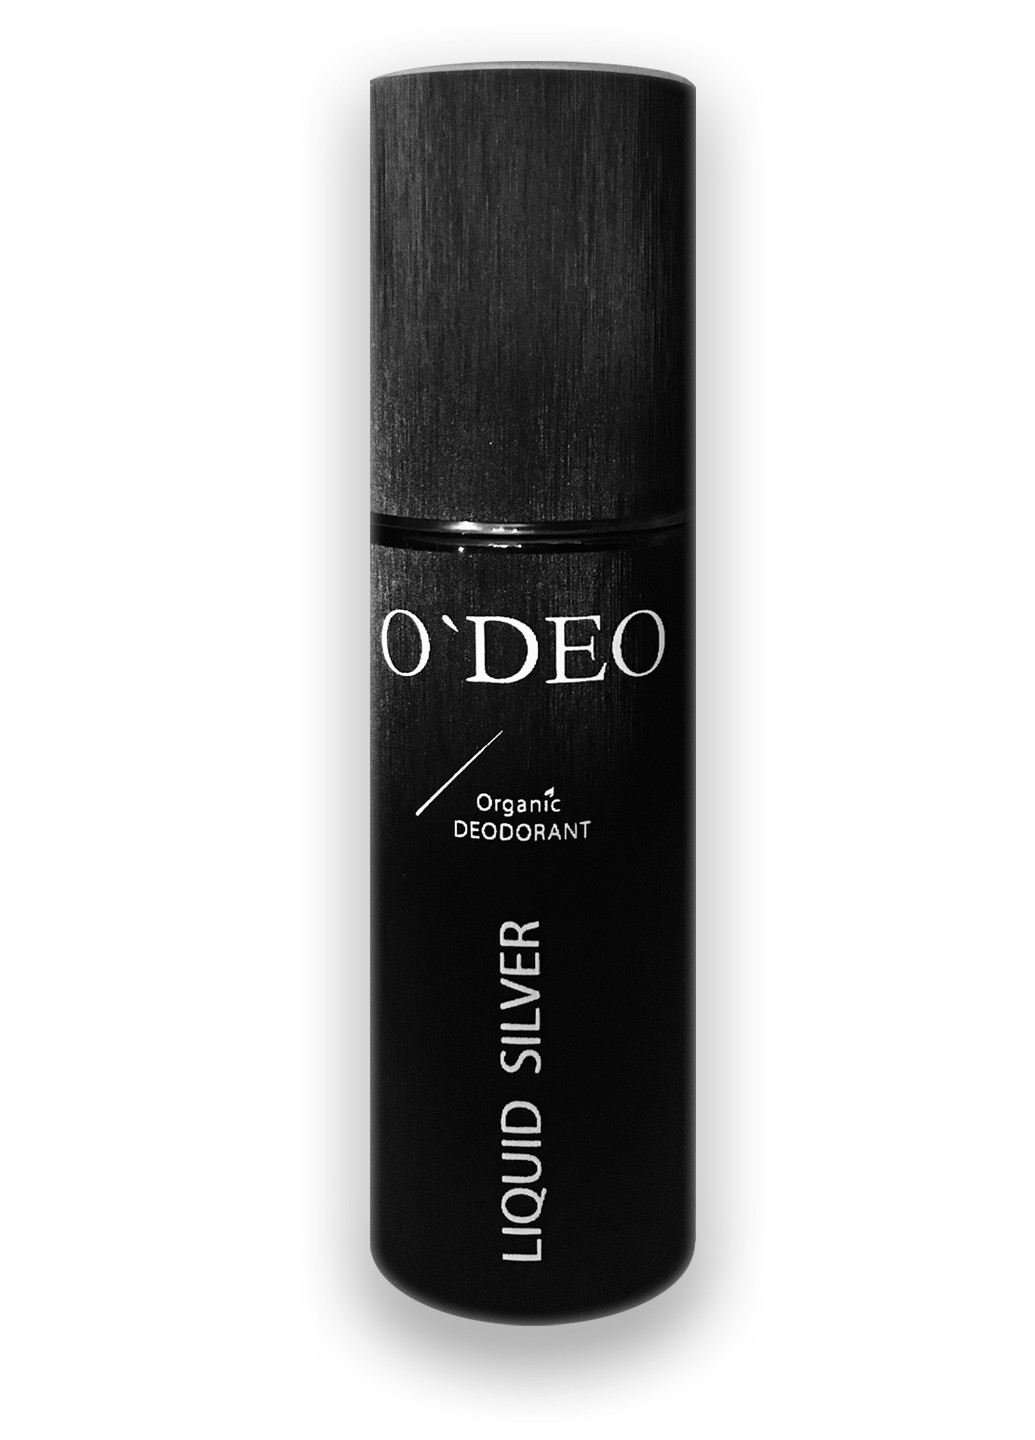 Ефективний органічний дезодорант без запаху для чоловіків ODEO Men (120мл) O'DEO liquid silver (258884161)